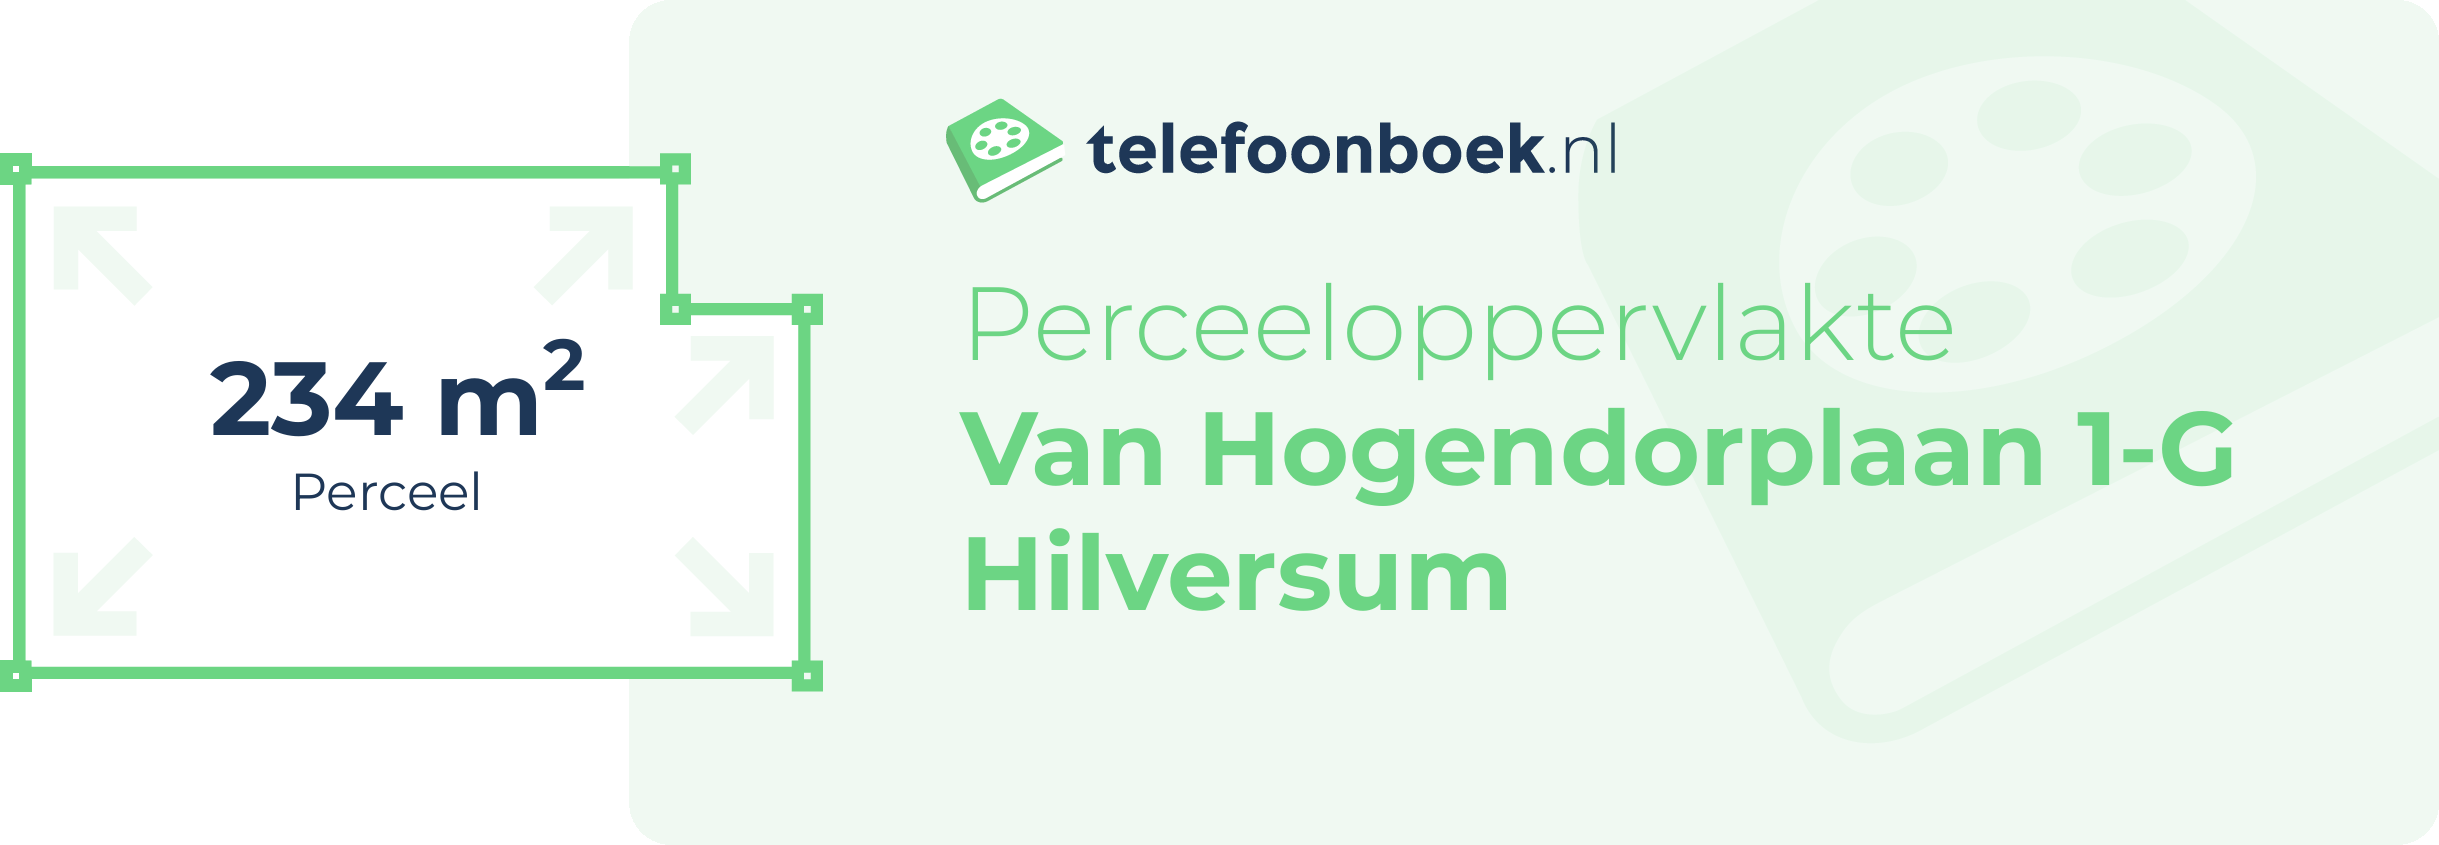 Perceeloppervlakte Van Hogendorplaan 1-G Hilversum